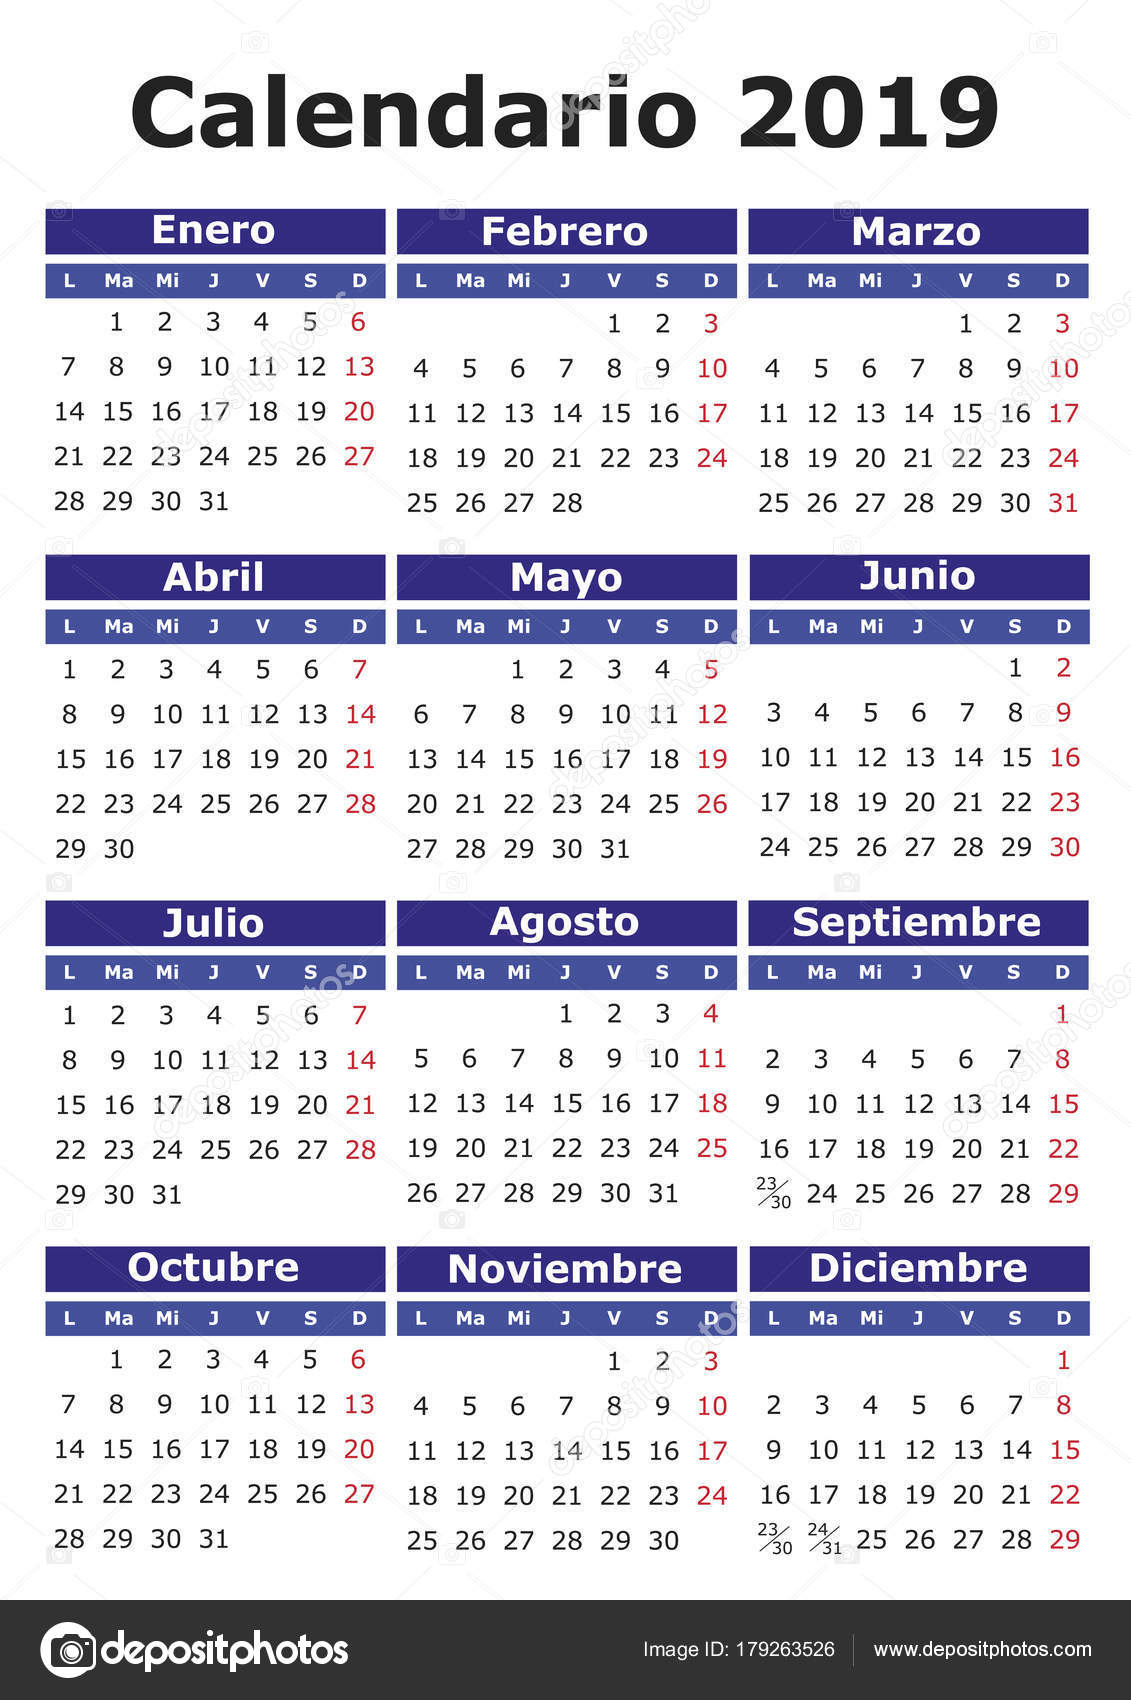 spanish-calendar-2019-stock-vector-alfonsodetomas-179263526